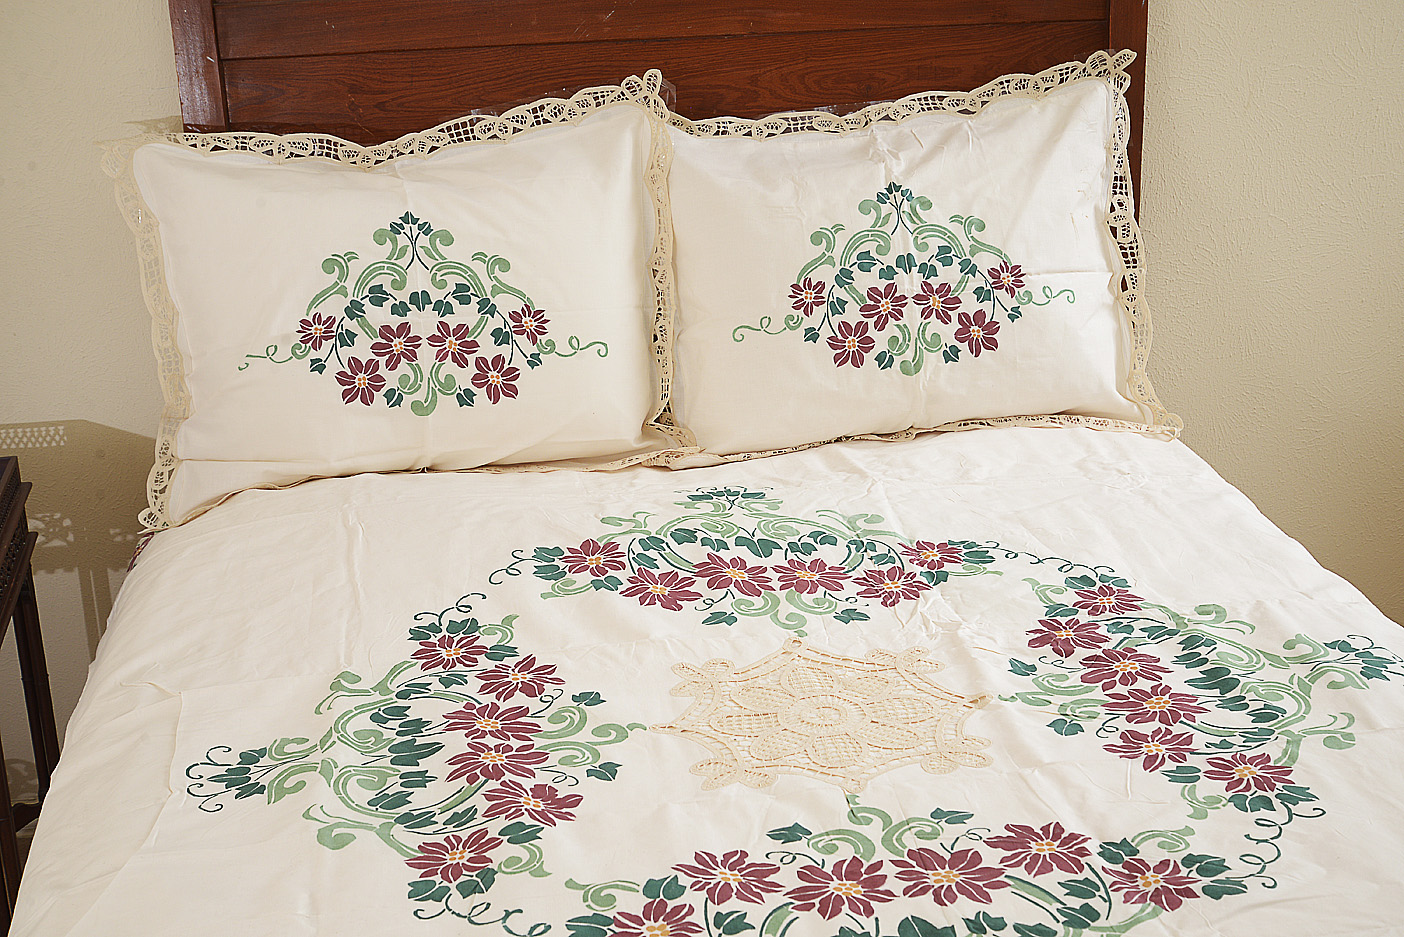 Floral Duvet Cover, Floral Pillow Shams